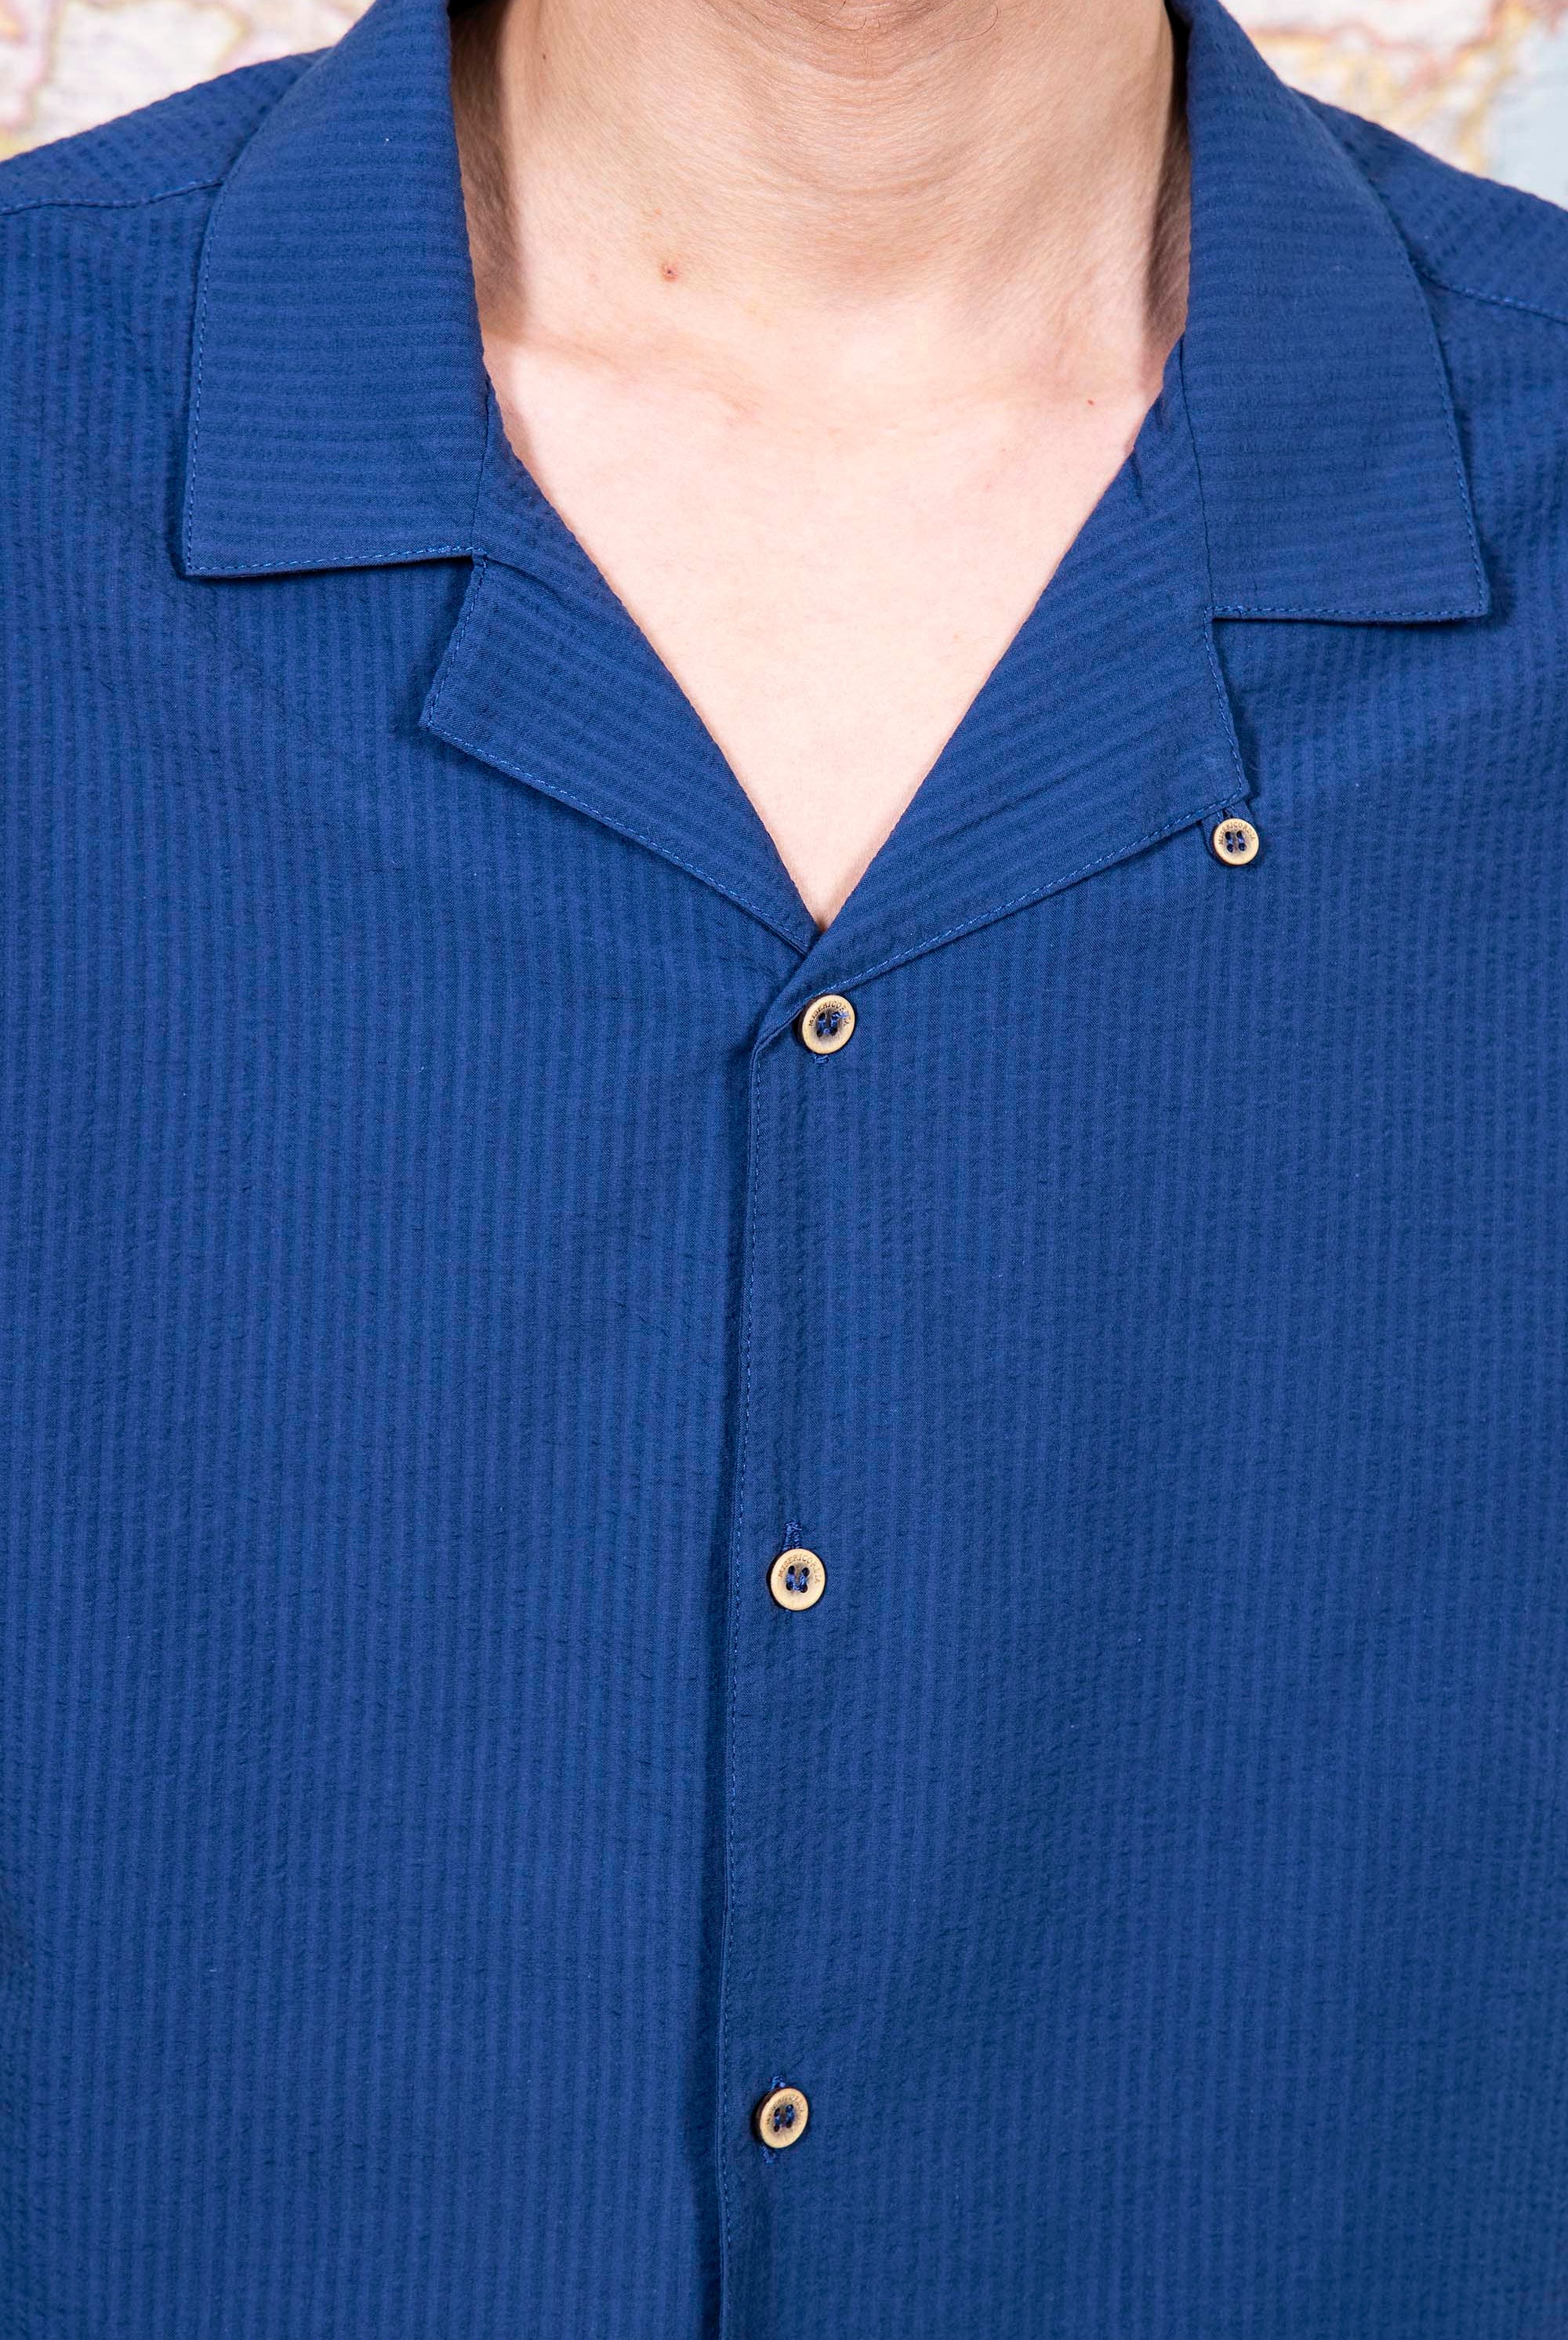 Chemise Fidel Bleu Acier chemise à l'esprit classique, simple et élégant